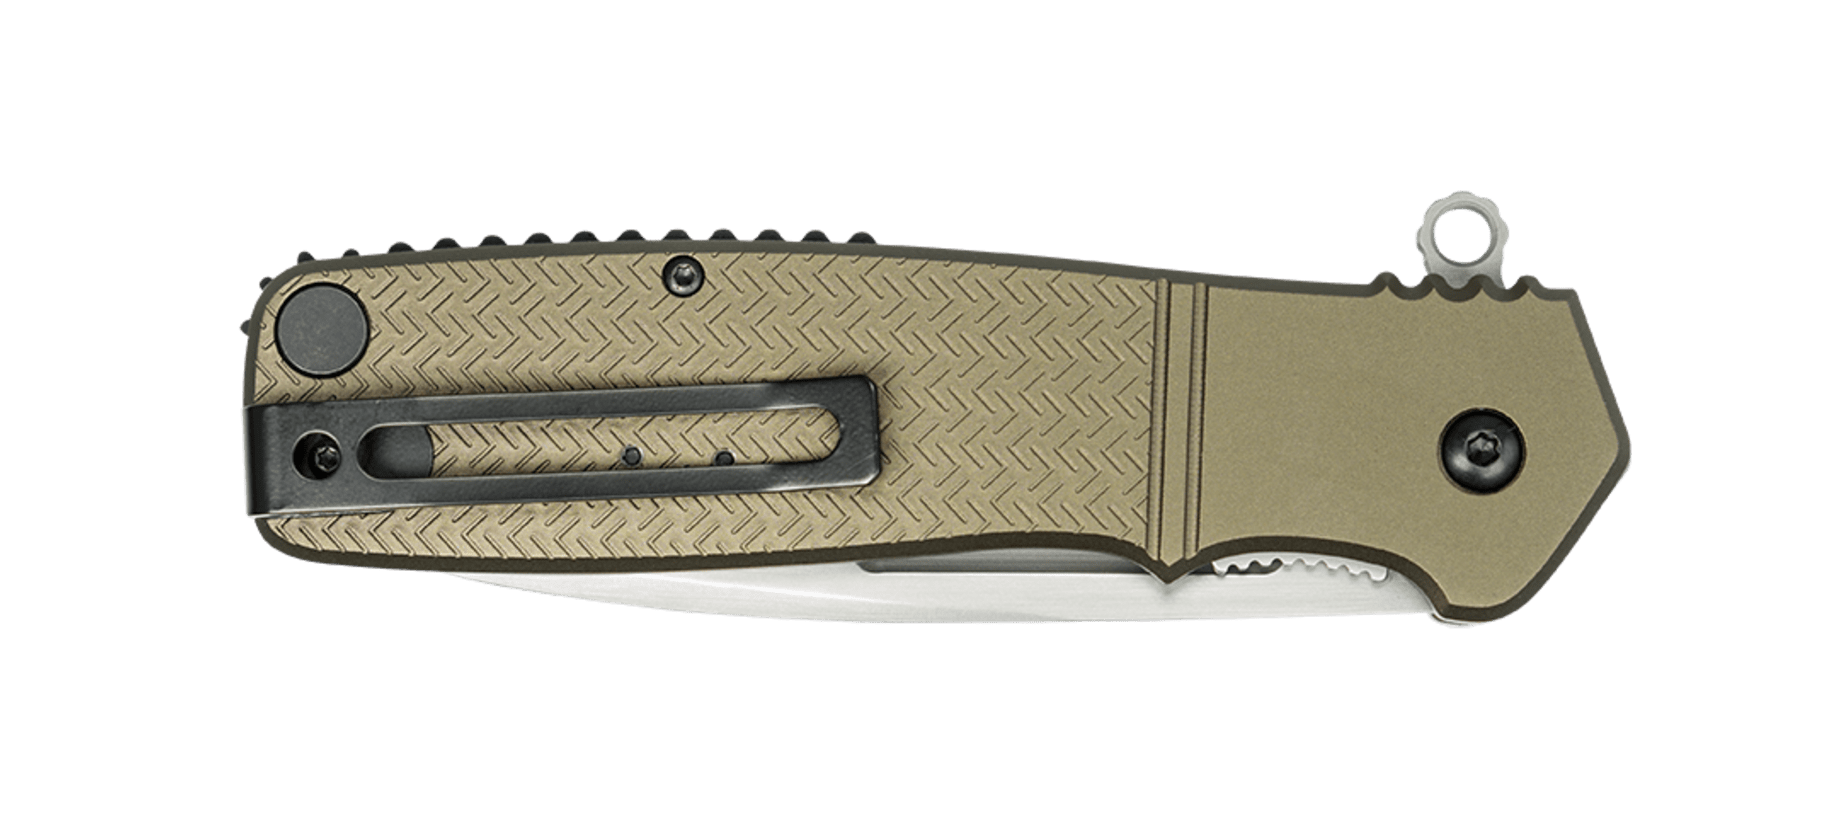 фото Складной нож crkt homefront™, сталь aus-8, рукоять алюминиевый сплав